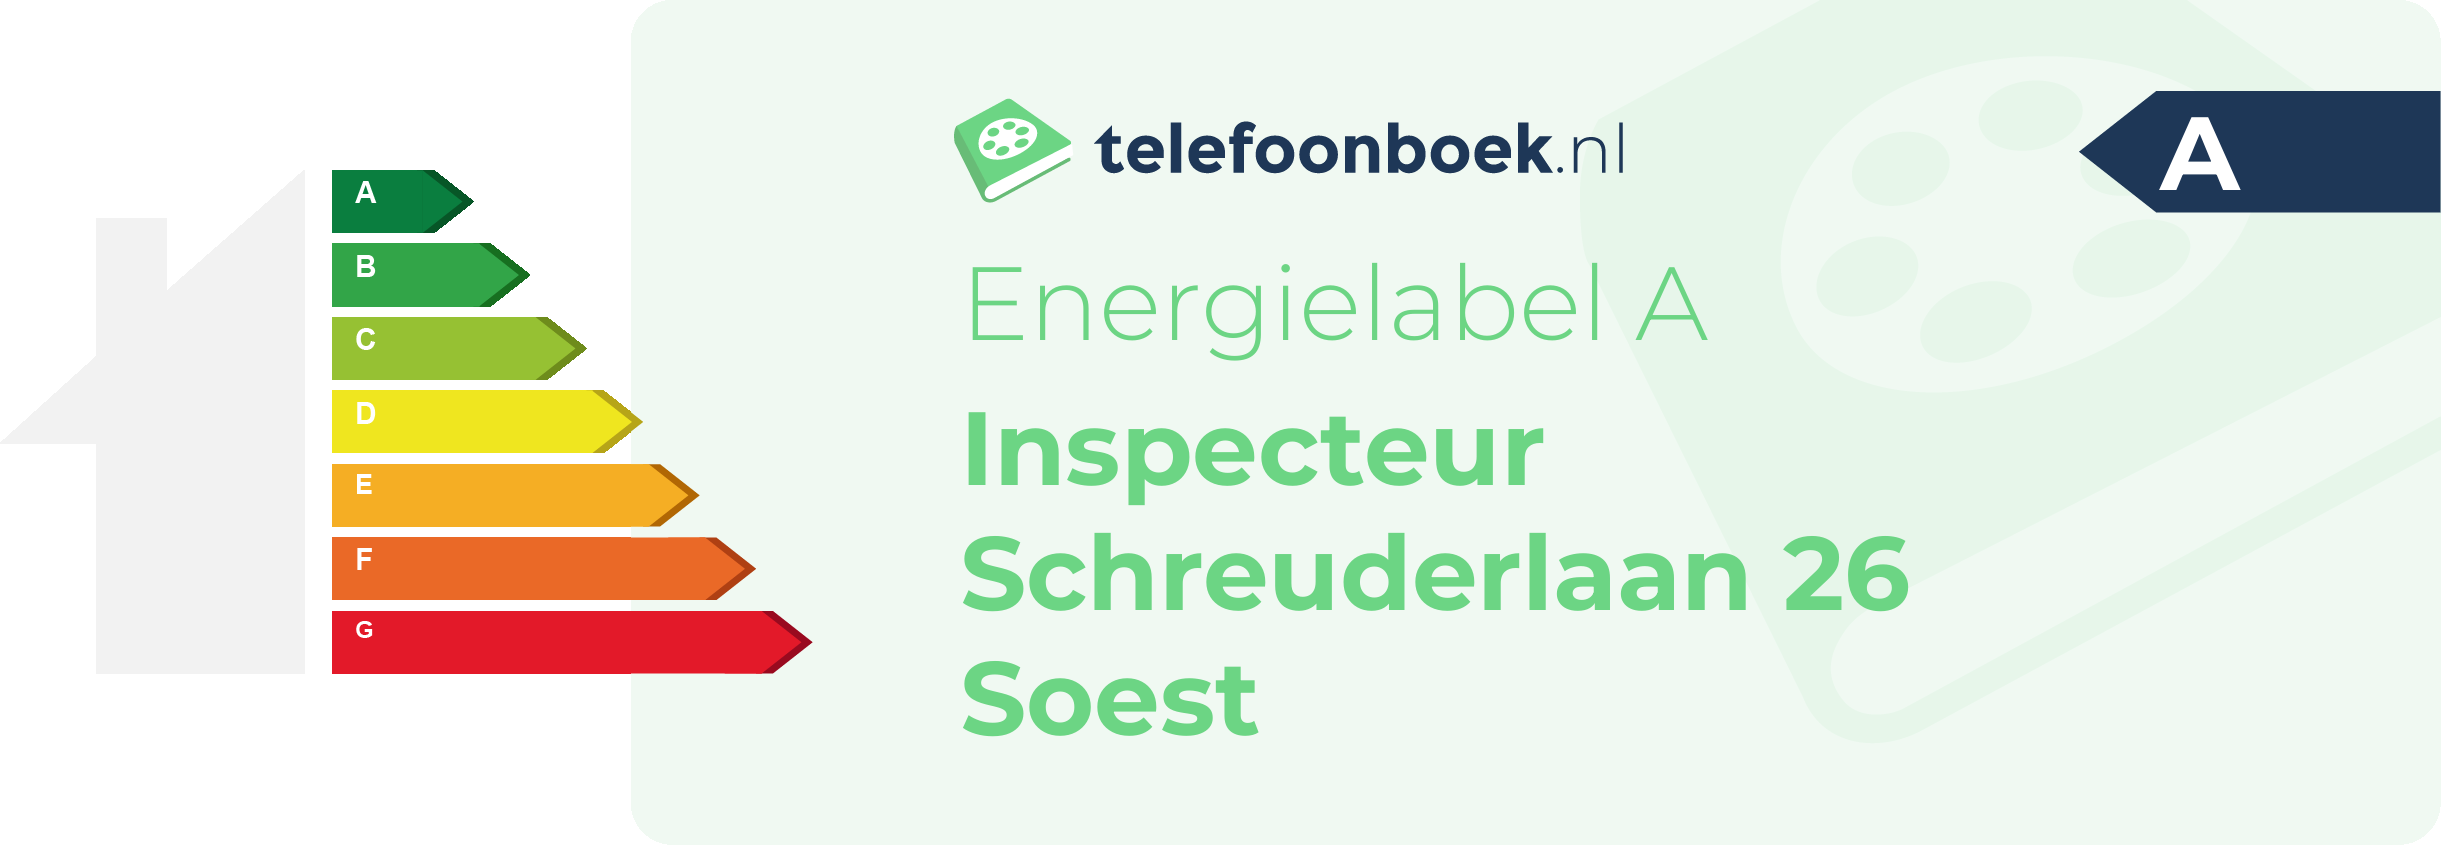 Energielabel Inspecteur Schreuderlaan 26 Soest